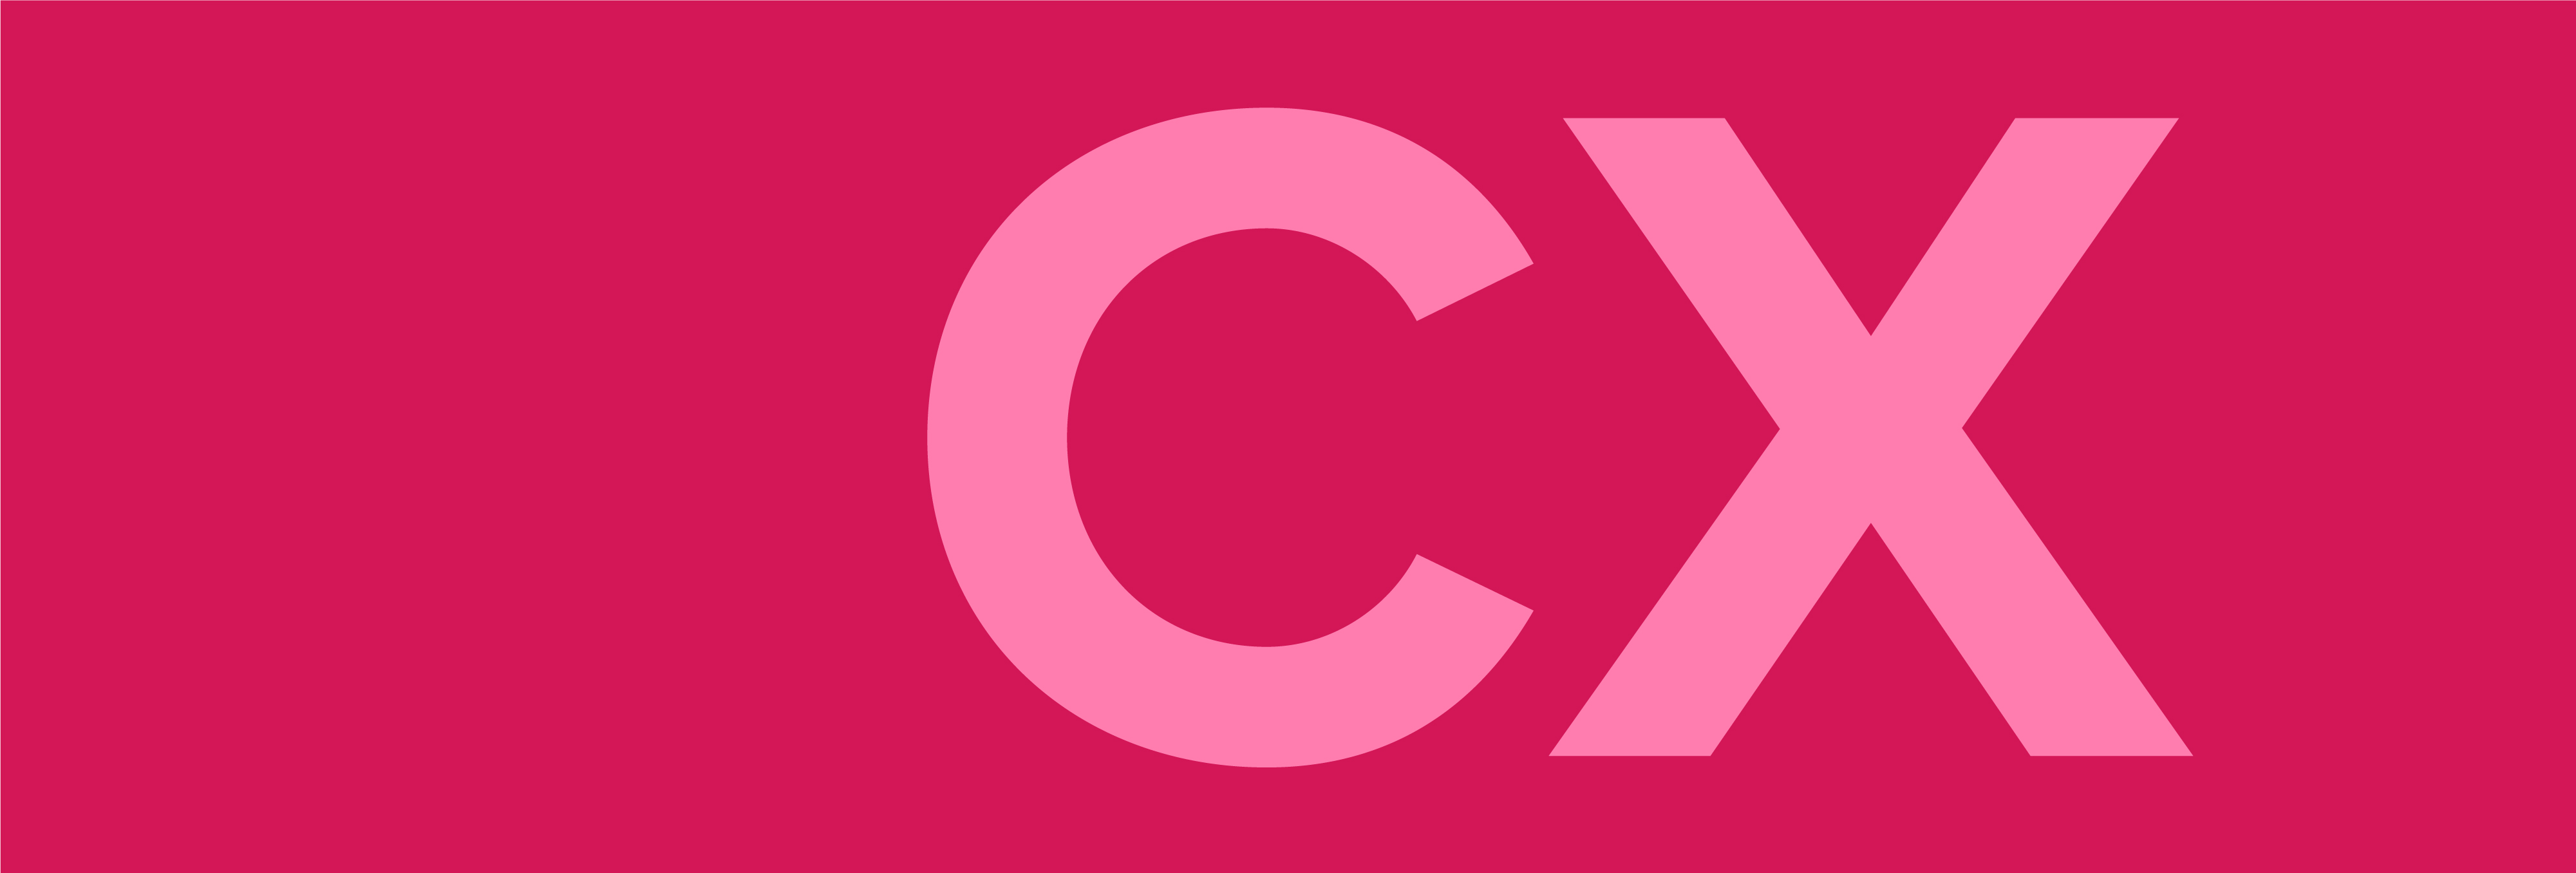 Những điều các nhà lãnh đạo cần biết về thiết kế và trải nghiệm khách hàng CX